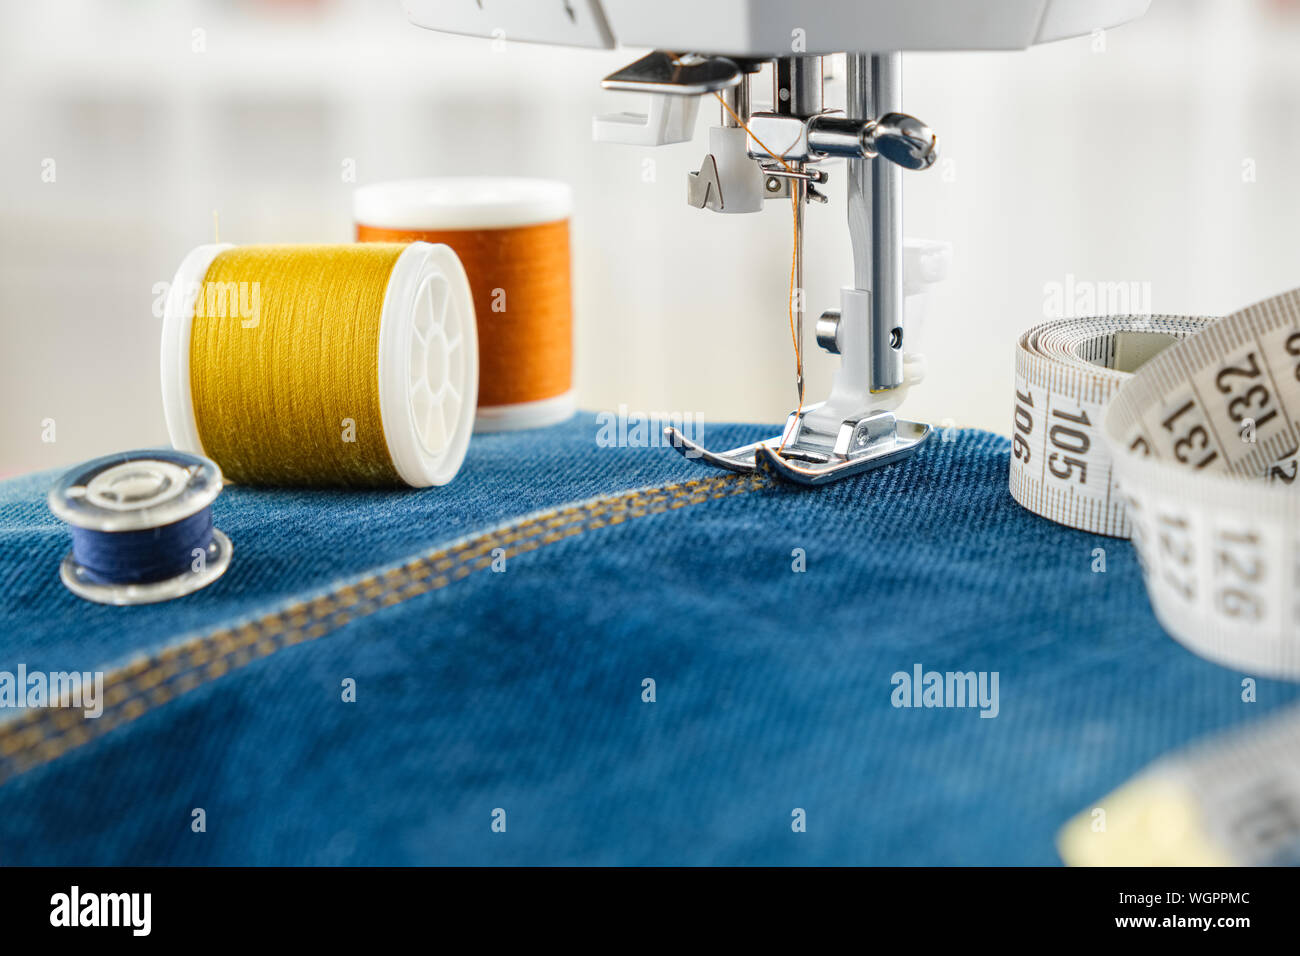 Nähen Jeans mit Nähmaschine. In der Nähe der Nadel der Nähmaschine auf dem  Denim Stitch, Spulen der Threads und Maßband Stockfotografie - Alamy